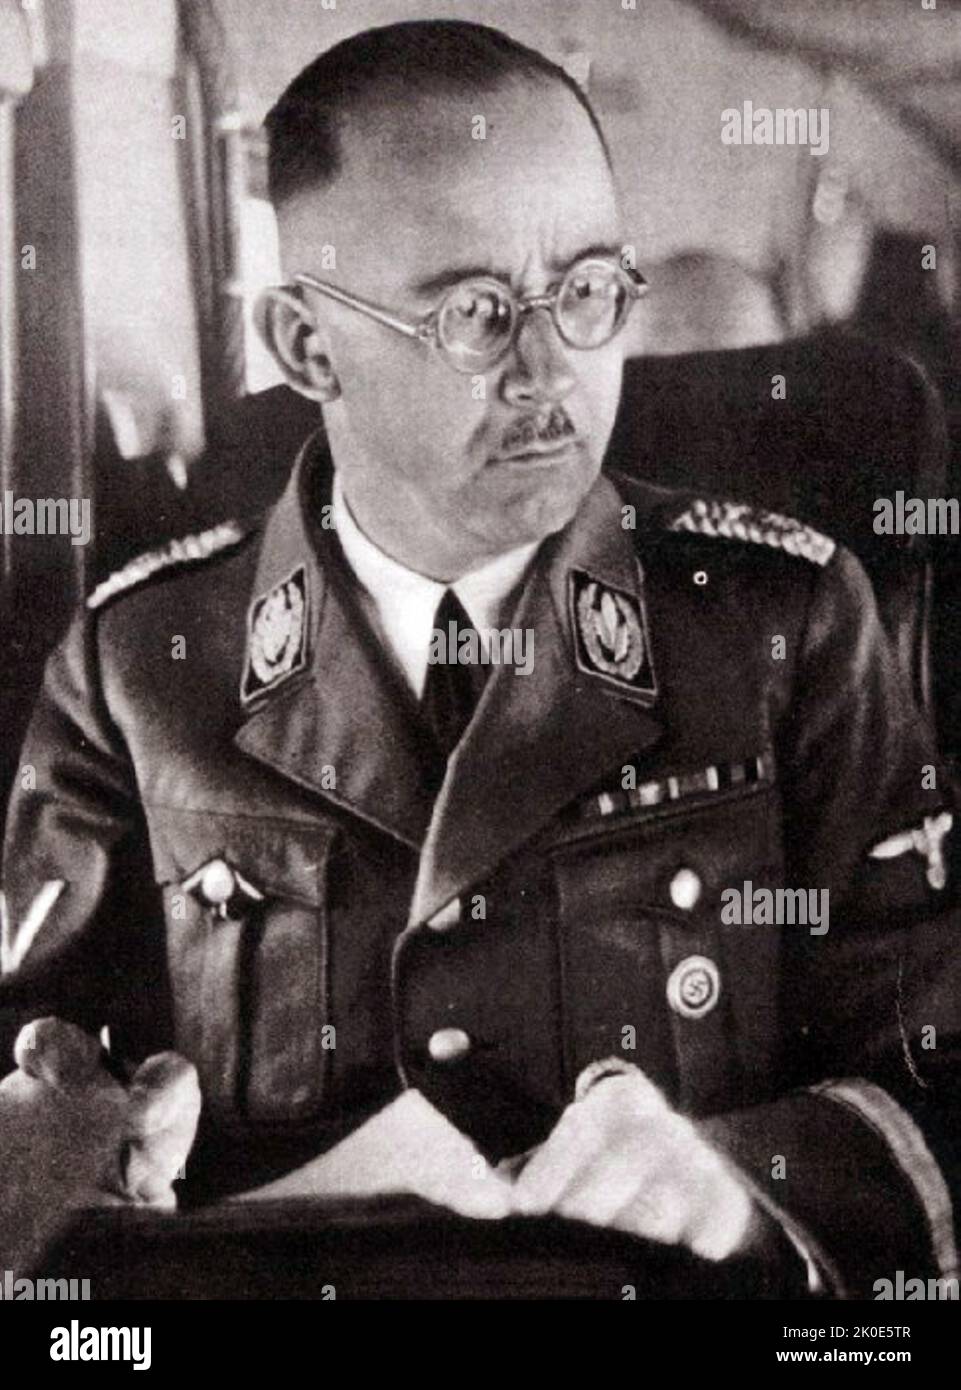 Heinrich Luitpold Himmler (1900 - 1945) Reichsfuhrer du Schutzstaffel (SS), et un membre important du Parti nazi (NSDAP) d'Allemagne. Himmler était l'un des hommes les plus puissants de l'Allemagne nazie et l'un des principaux architectes de l'Holocauste. Banque D'Images